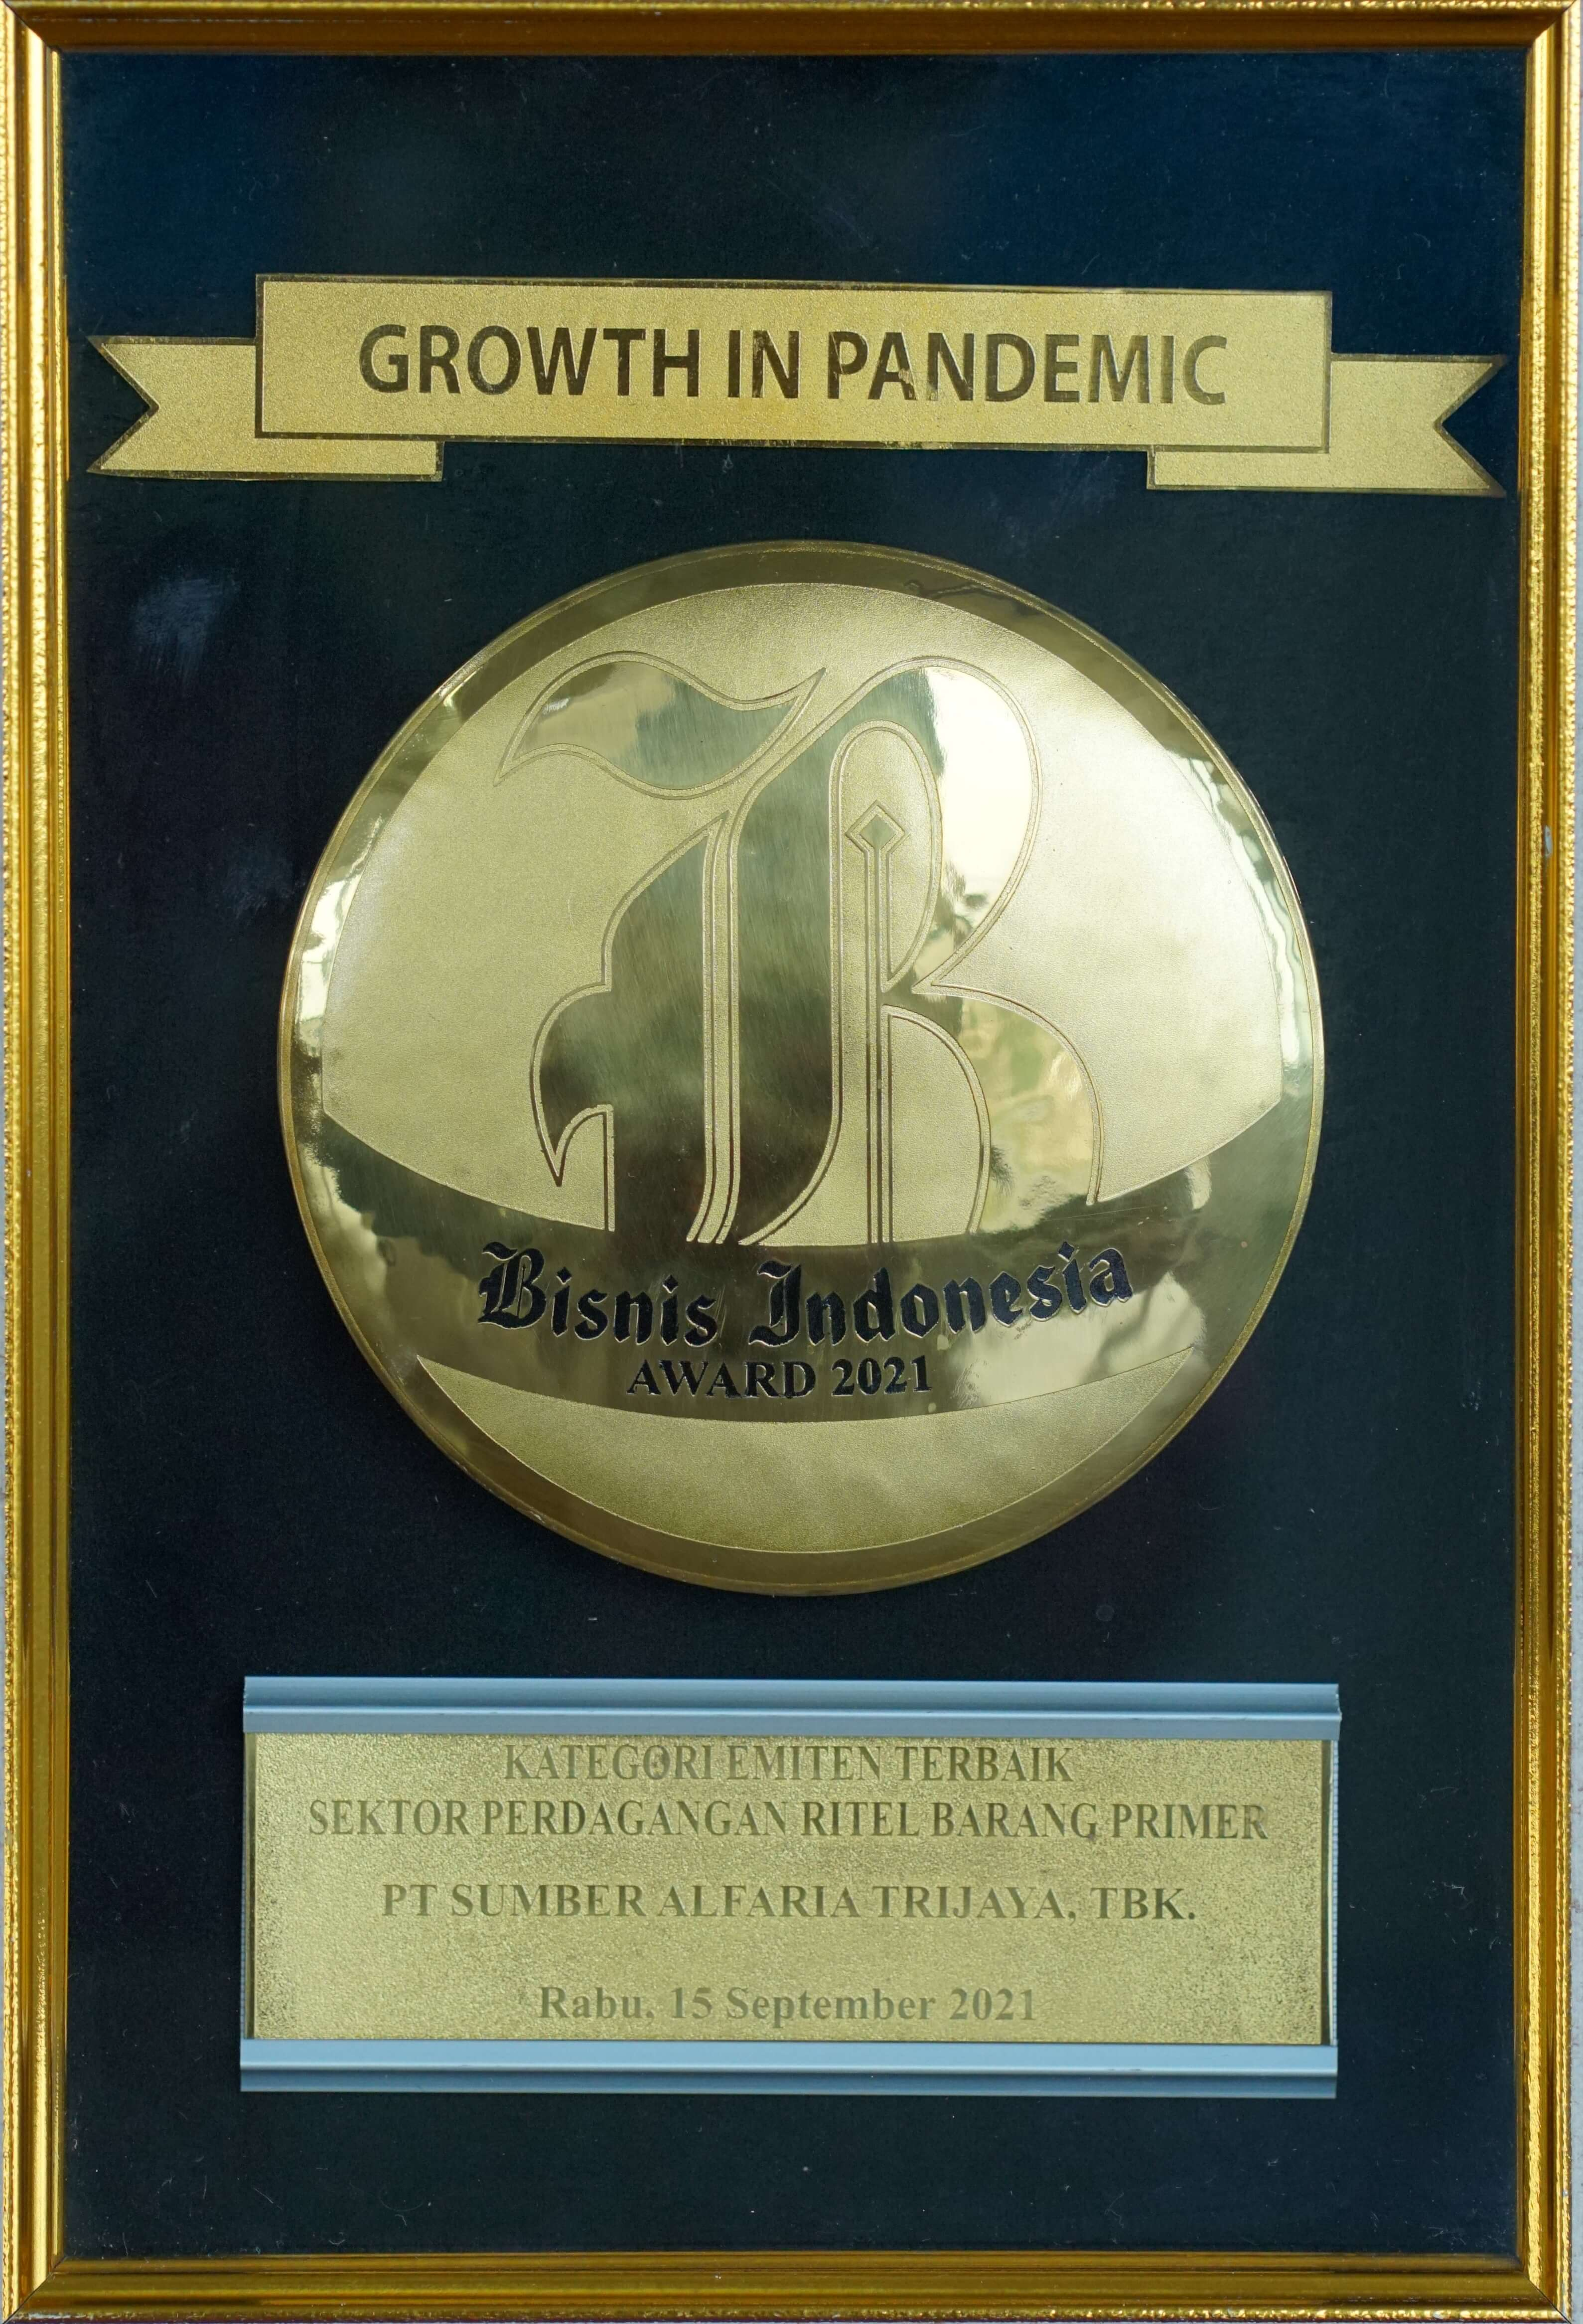 Image reward Emiten Terbaik Bisnis Indonesia Award 2021 dalam Kategori Perusahaan Sektor Perdagangan Ritel Barang Primer dari Bisnis Indonesia Award Harian Bisnis Indonesia